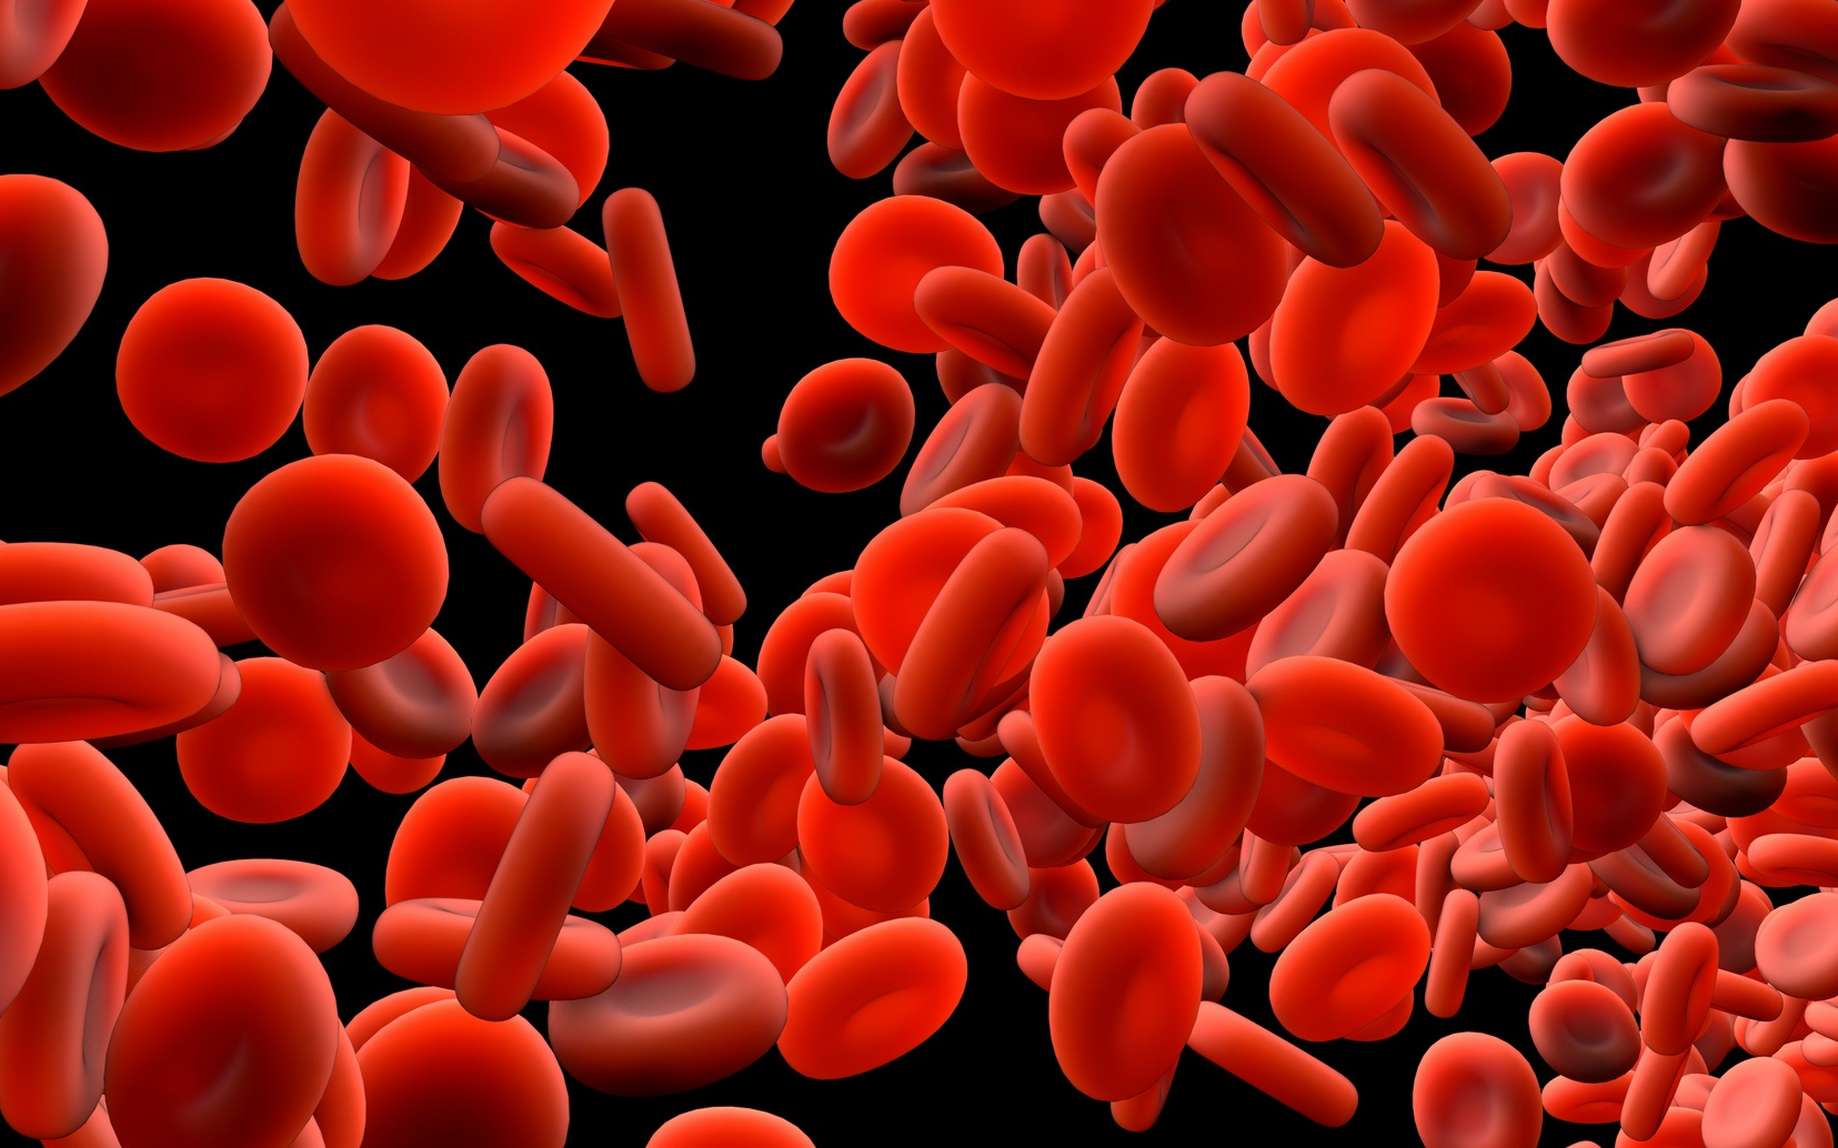 La coagulation du sang permet de limiter les hémorragies. © Design Cells, Fotolia